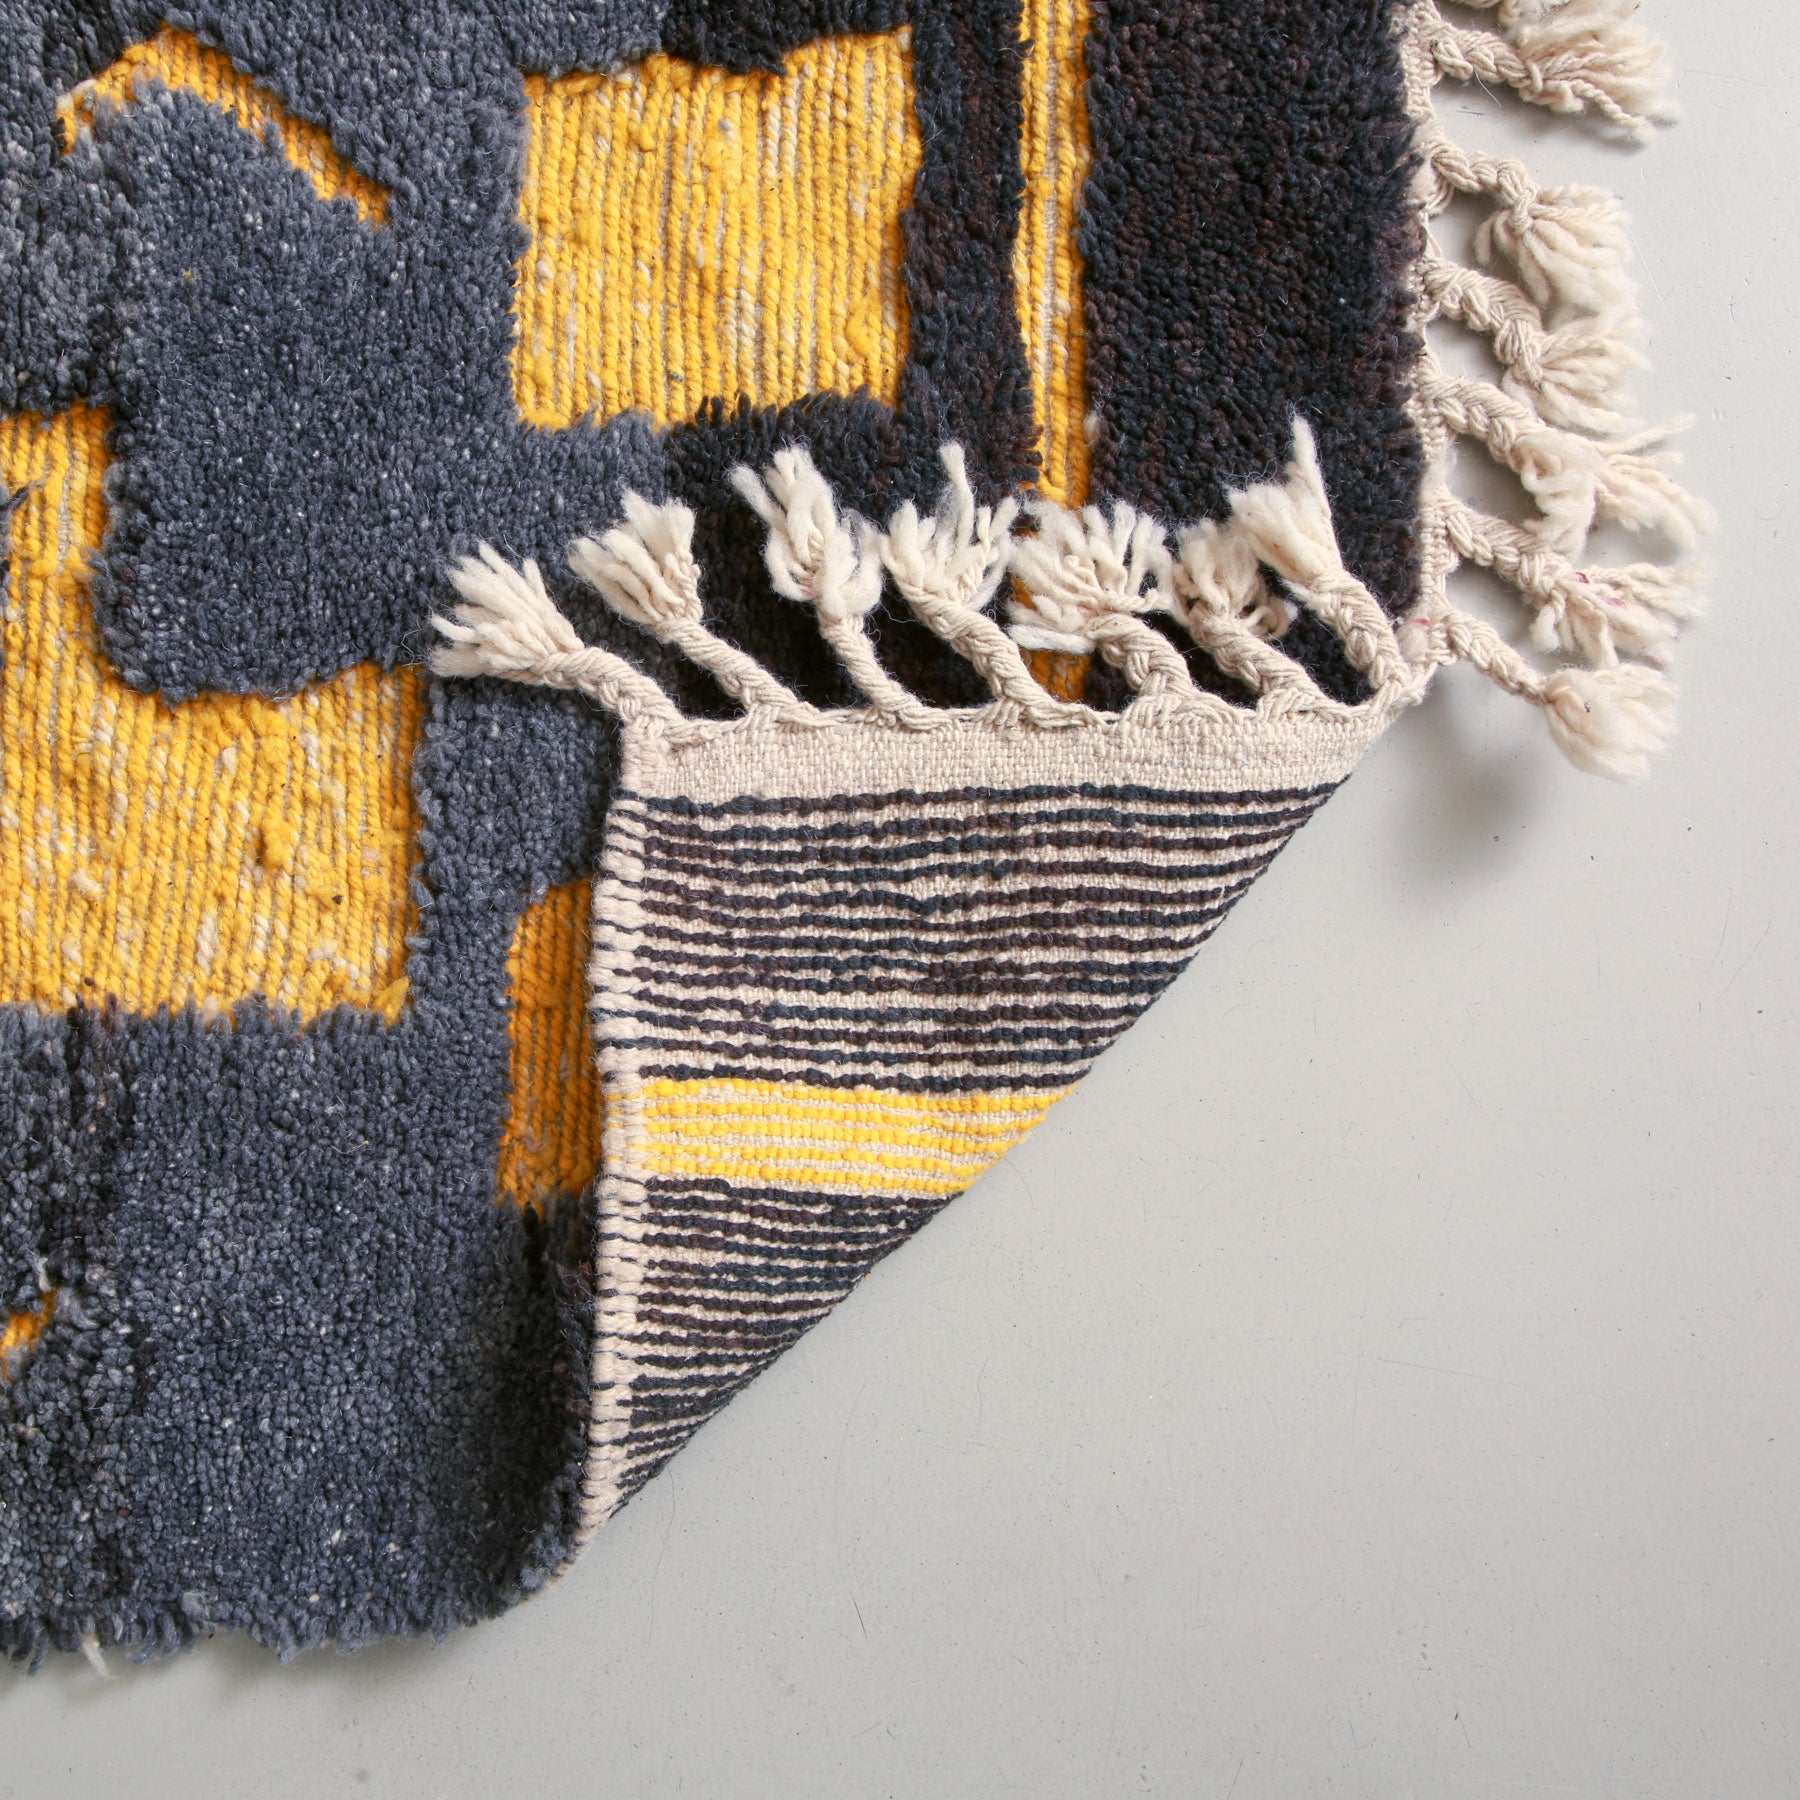 dettaglio dei nodi presenti sul retro di un tappeto marocchino beni ourain realizzato a mano